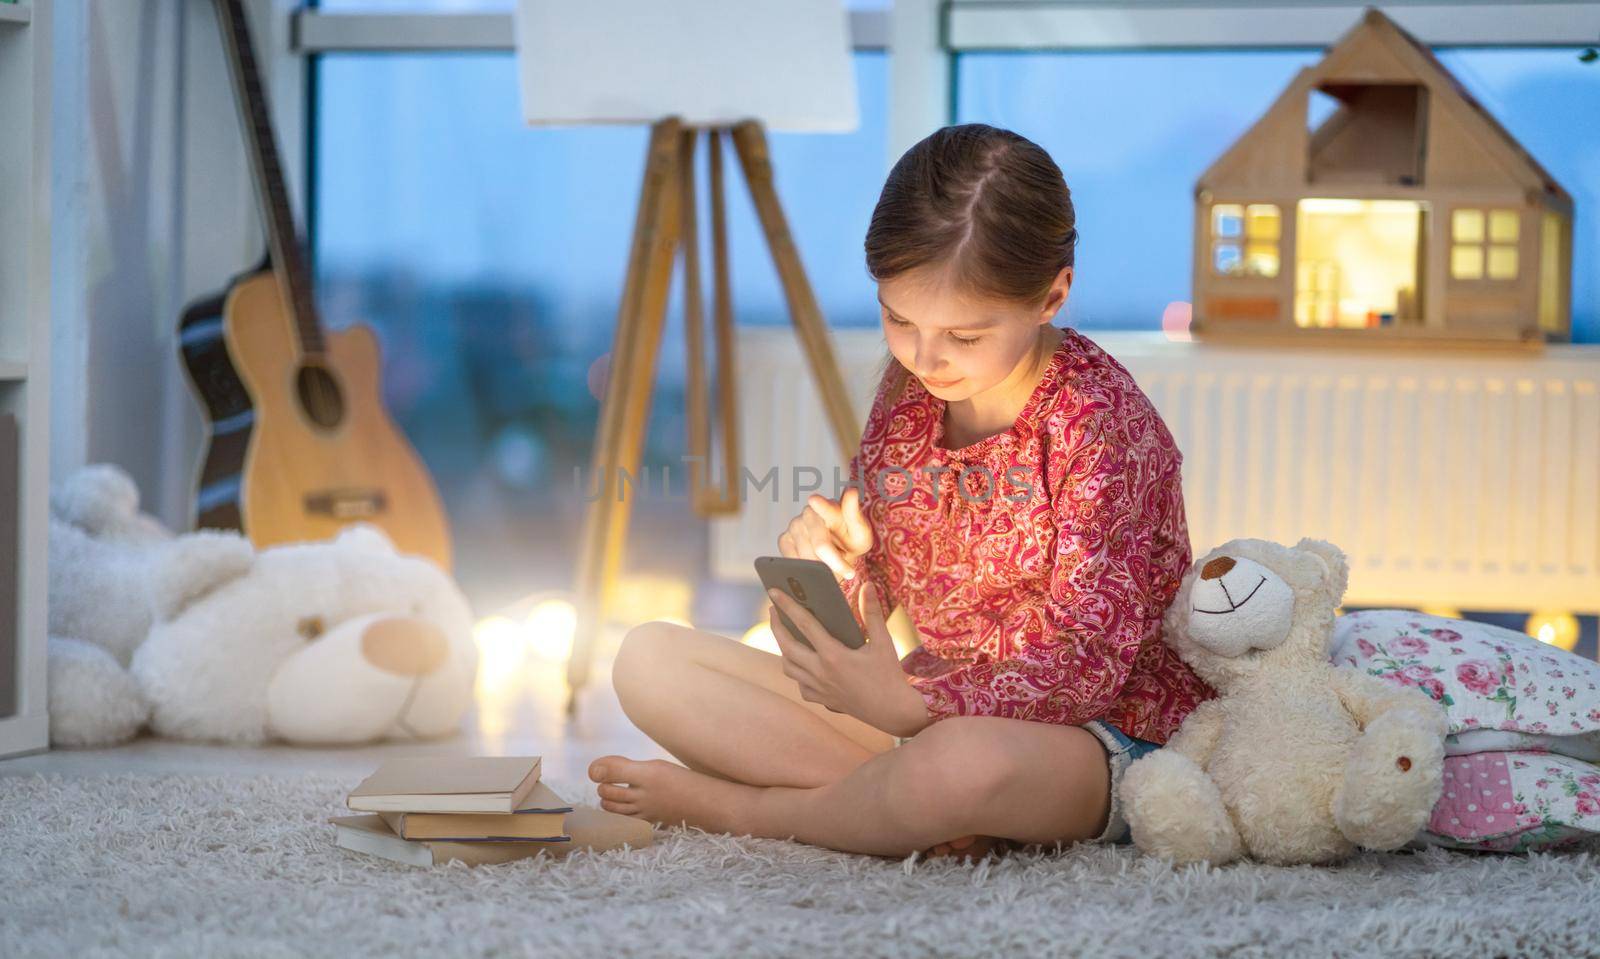 Little girl using smartphone in room by GekaSkr